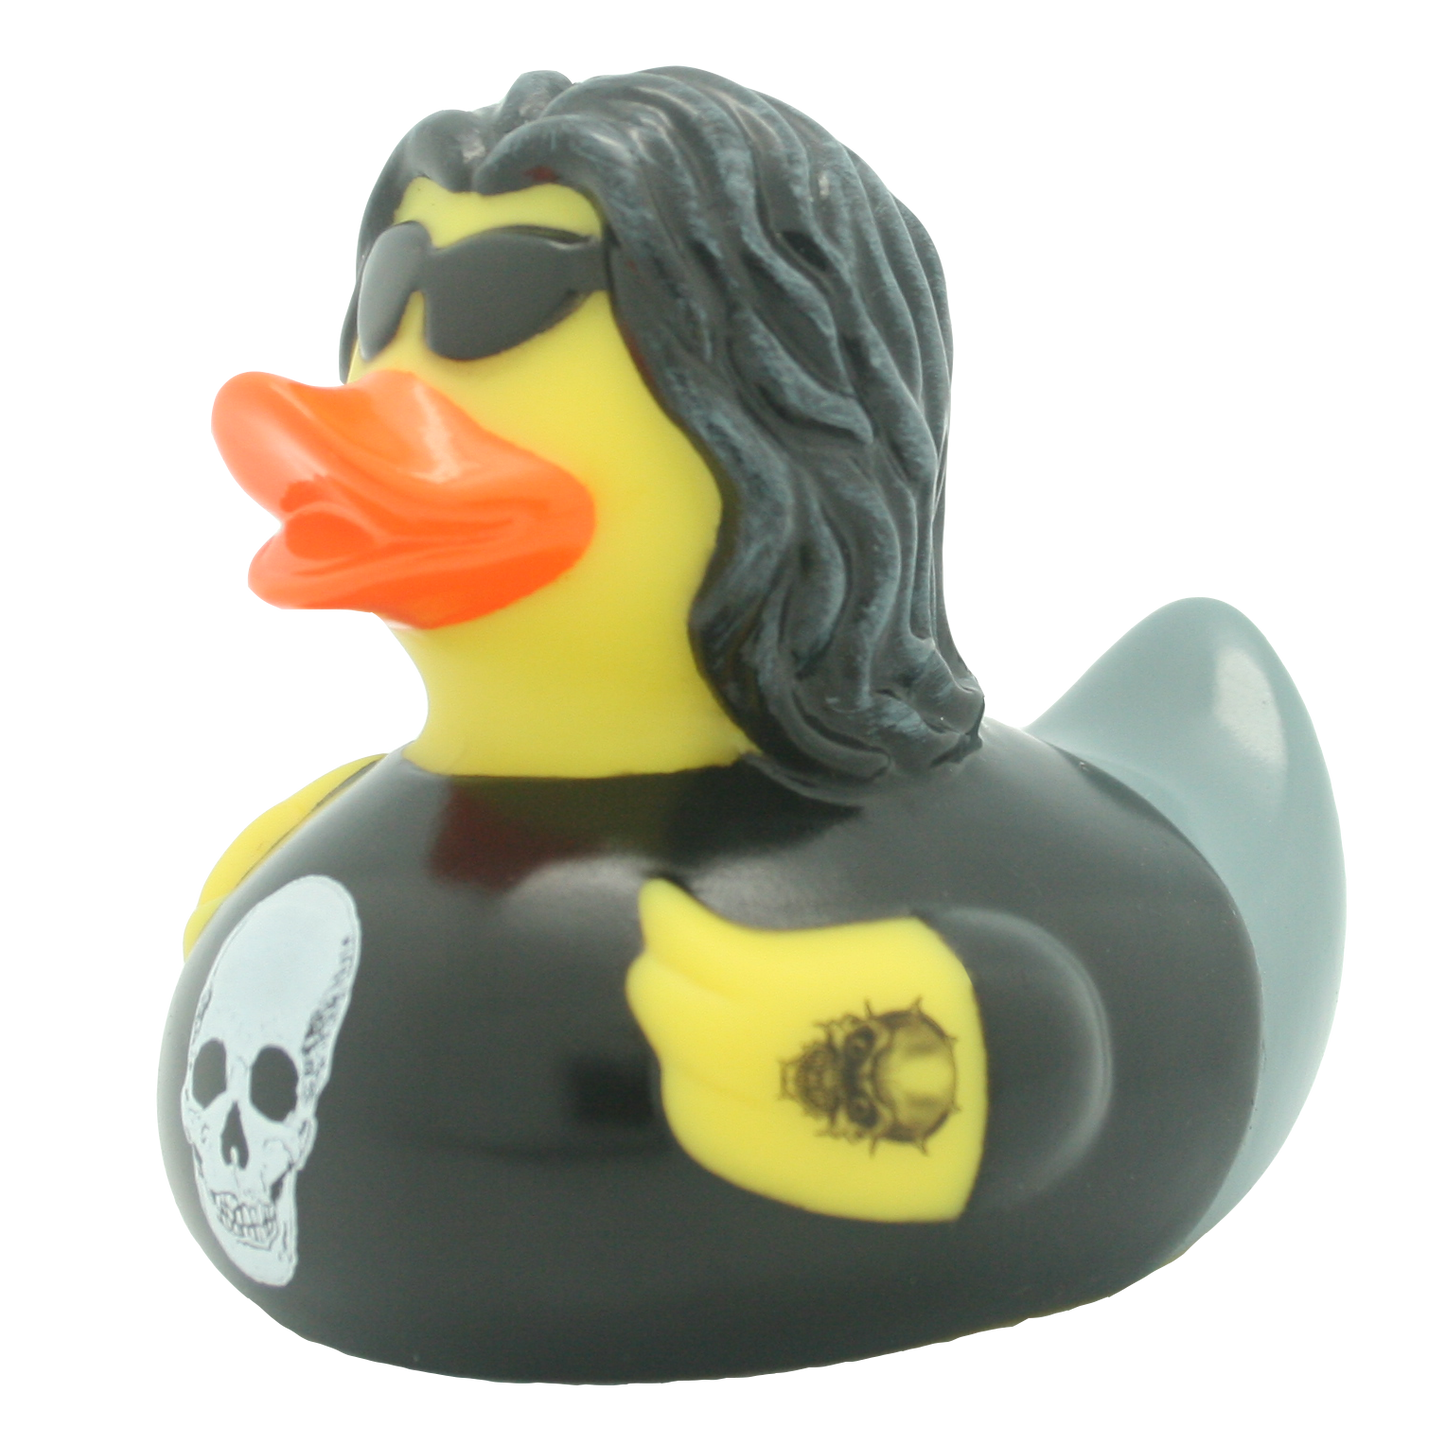 Heavy metal duck